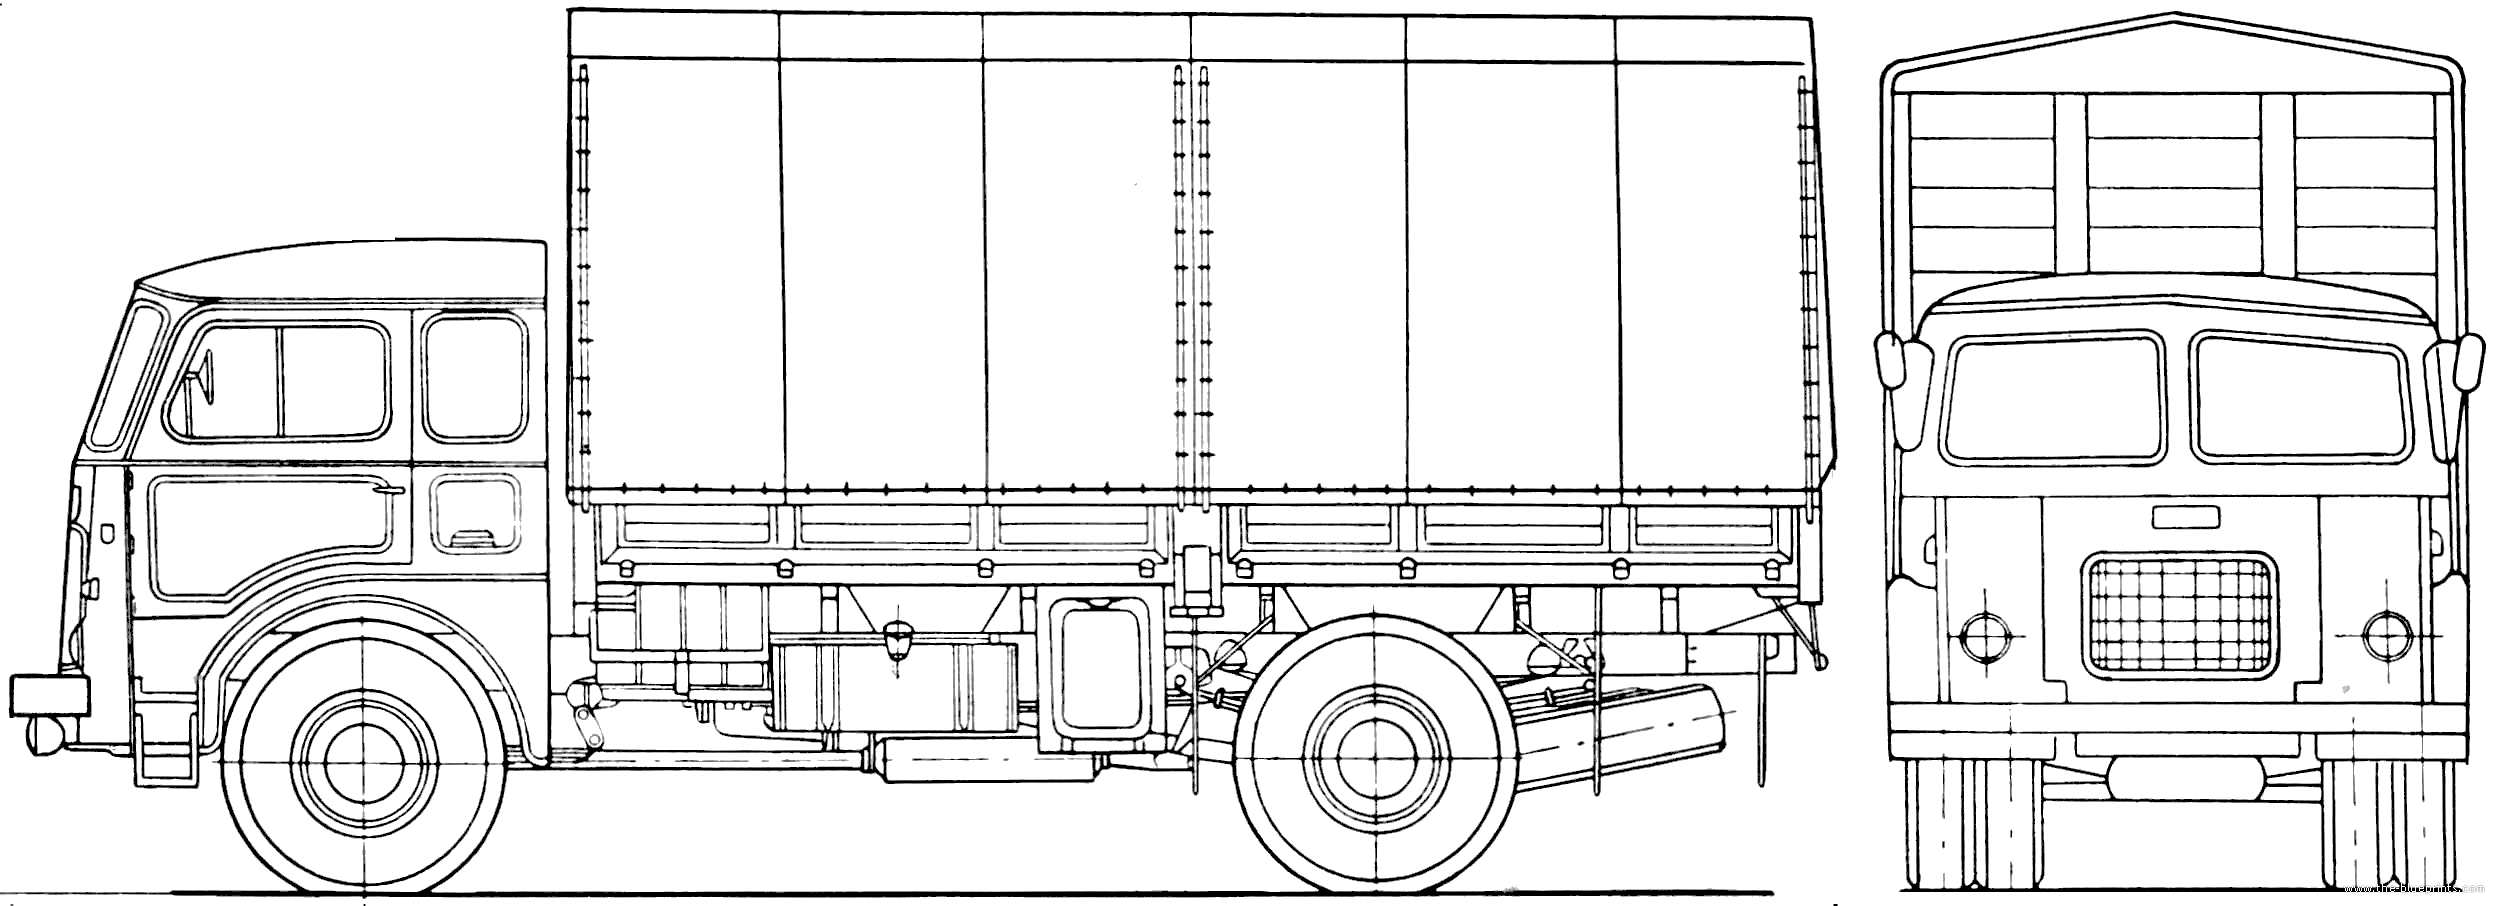 The-Blueprints.com - Plans > Camions > Camions > Jelcz 315E (